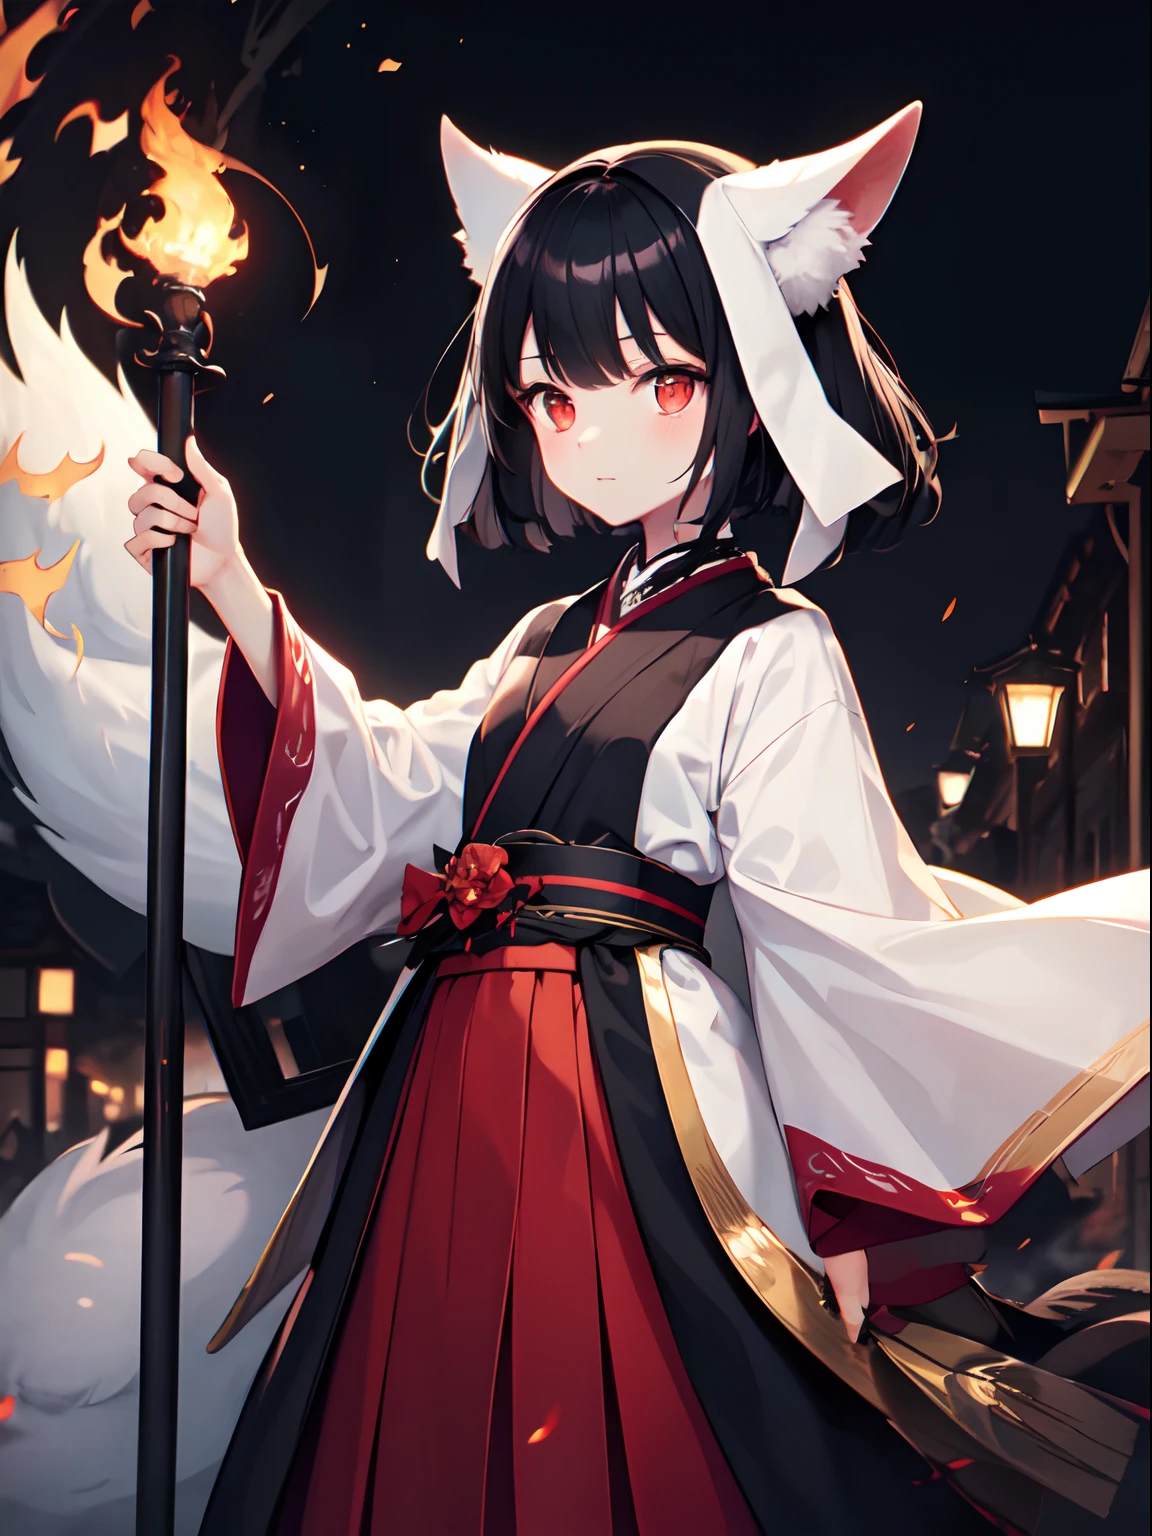 Pequena garota kitsune com cabelo preto, olhos vermelhos brilhantes, mangas passando dos dedos, aparência elegante e digna, Desfile noturno de cem demônios, hipnotizante e sinistro